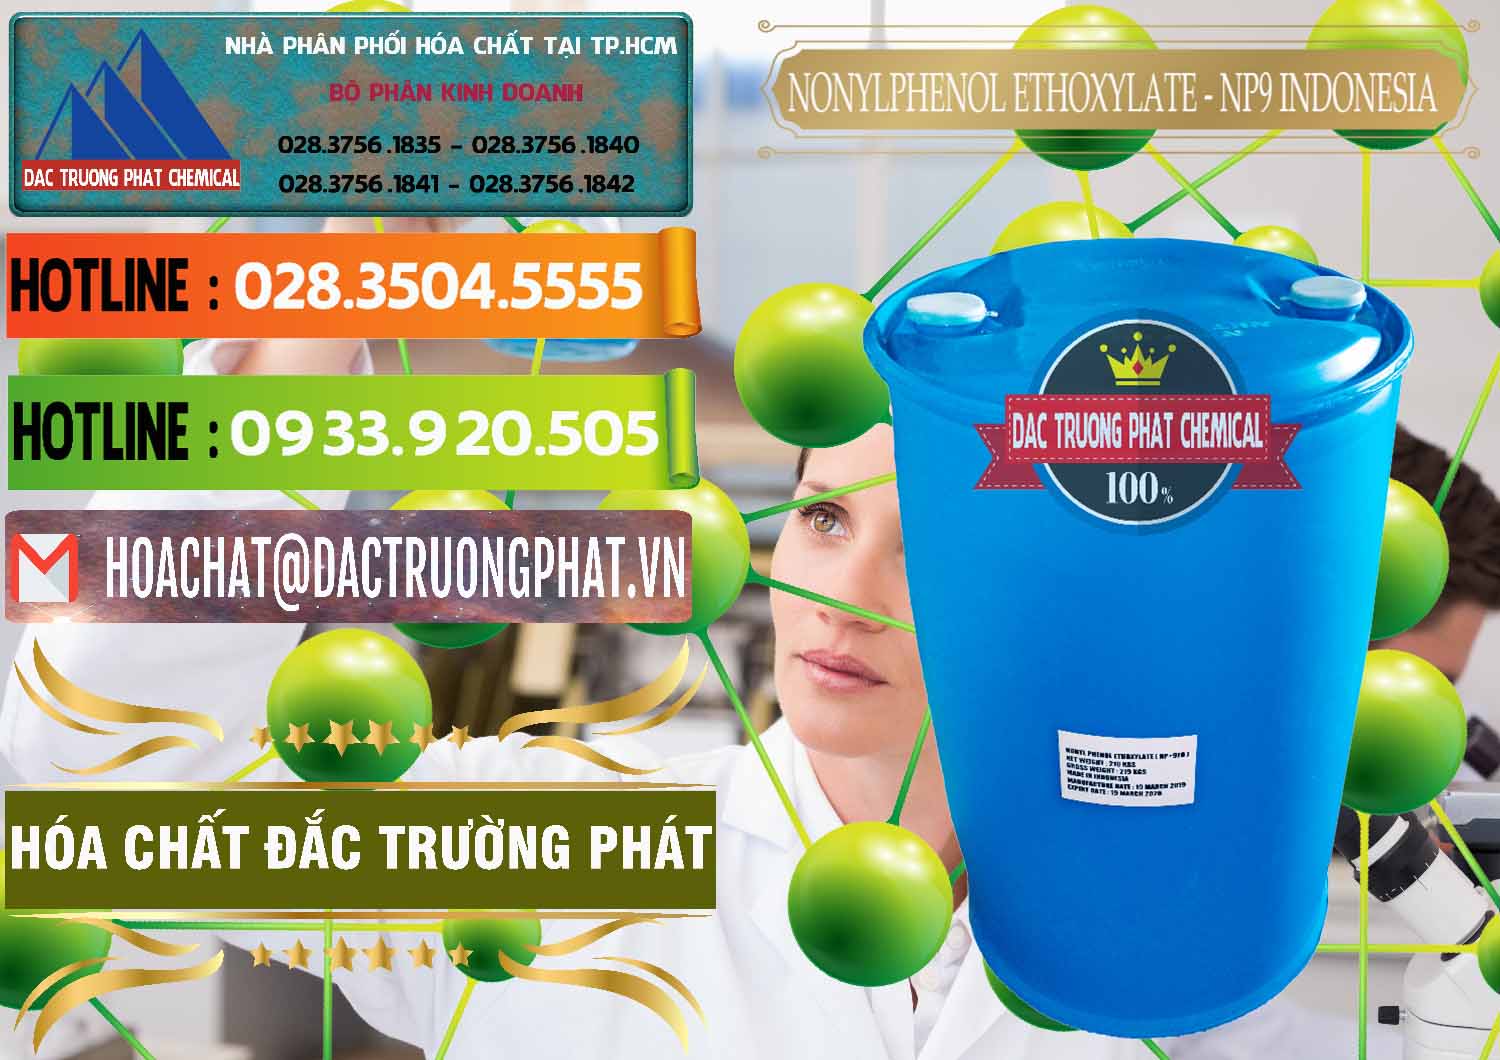 Nơi bán và cung cấp NP9 - Nonyl Phenol Ethoxylate Indonesia - 0317 - Đơn vị phân phối & cung cấp hóa chất tại TP.HCM - cungcaphoachat.com.vn